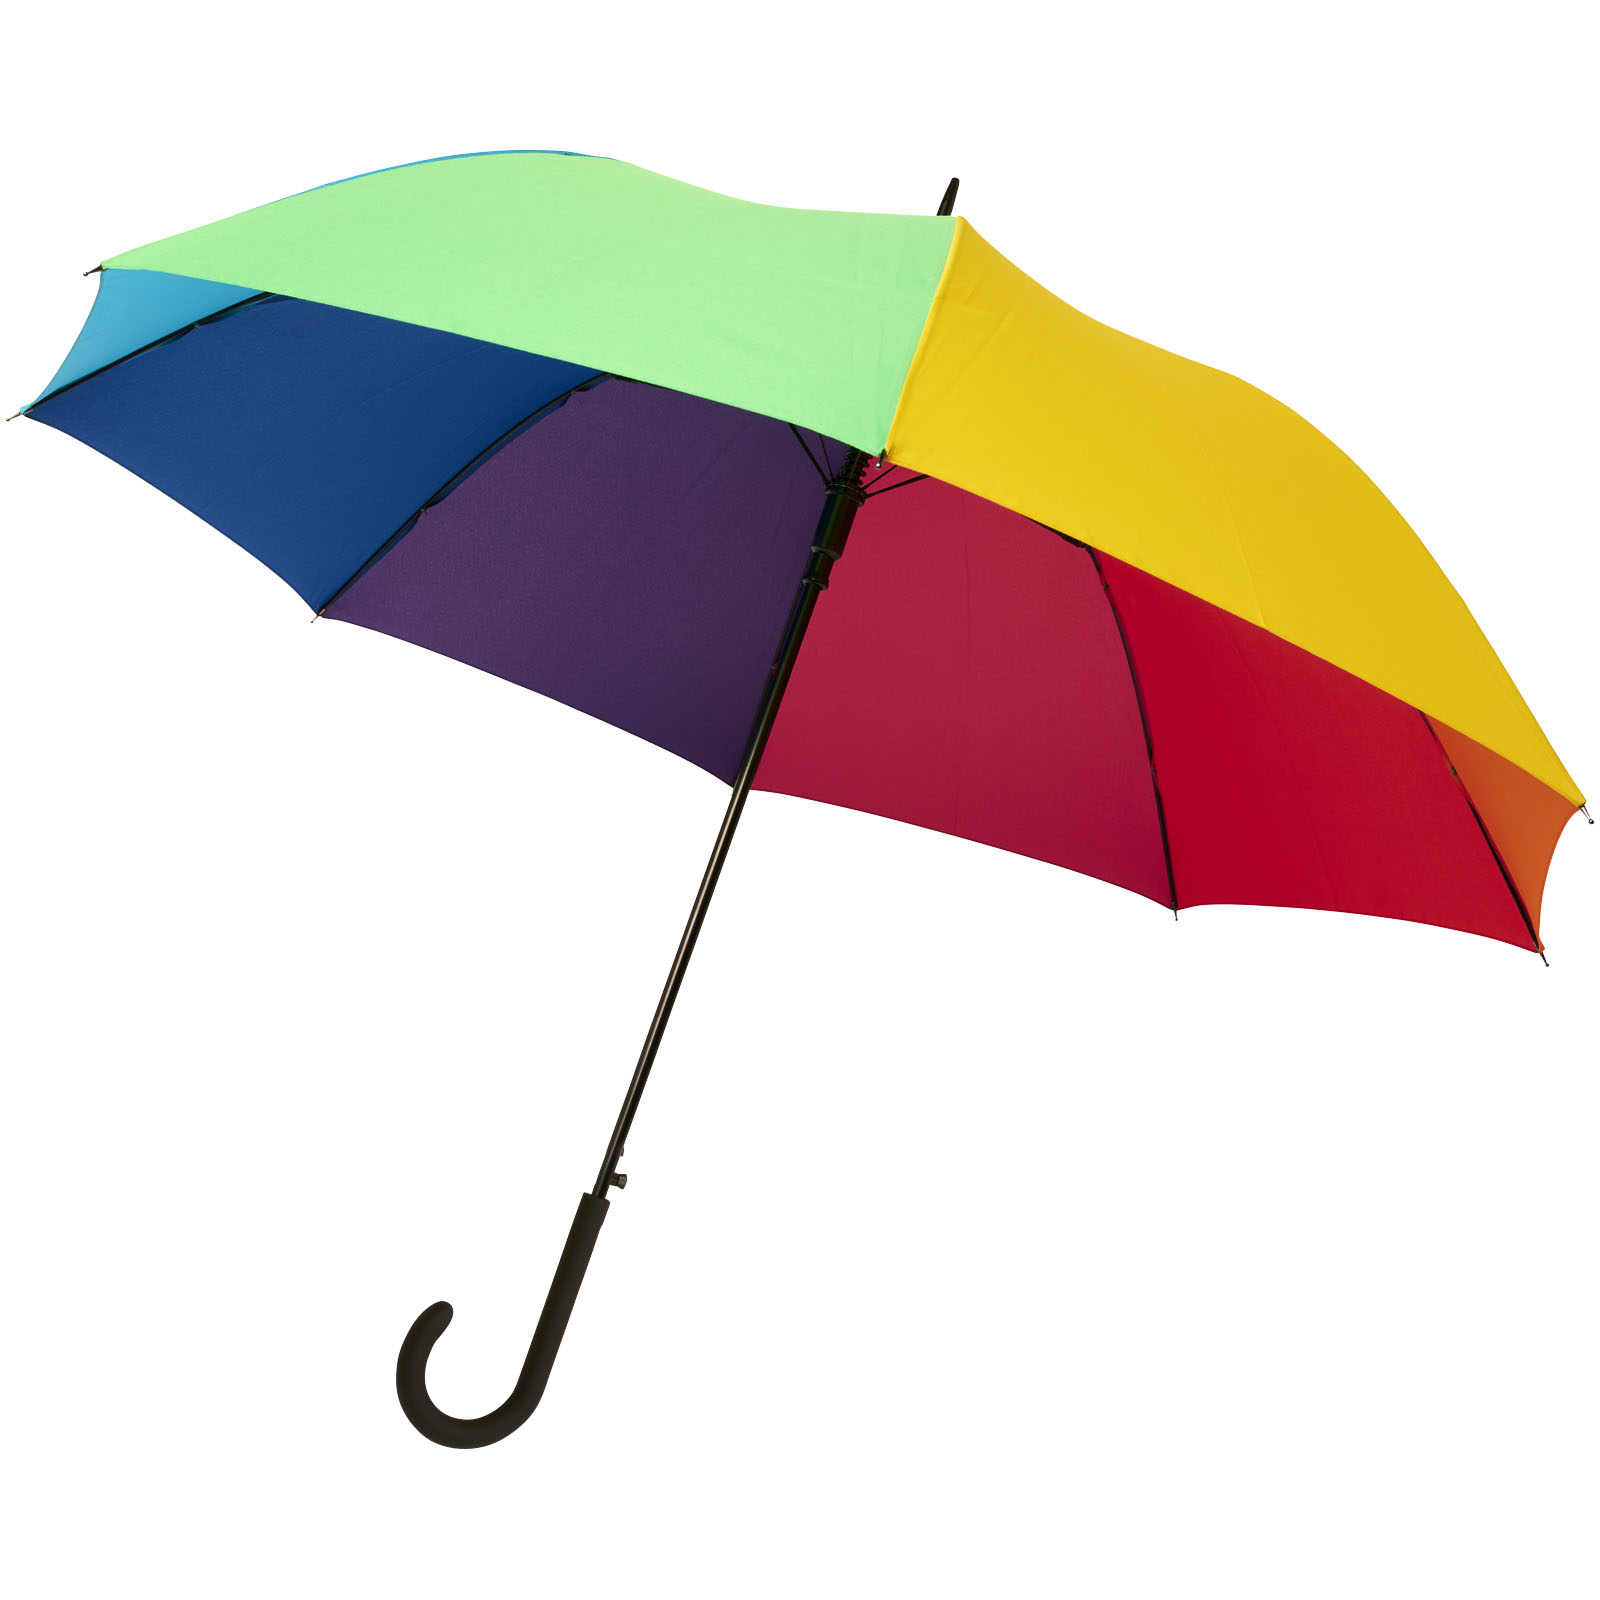 Parapluies tempête - Parapluie tempête à ouverture automatique 23